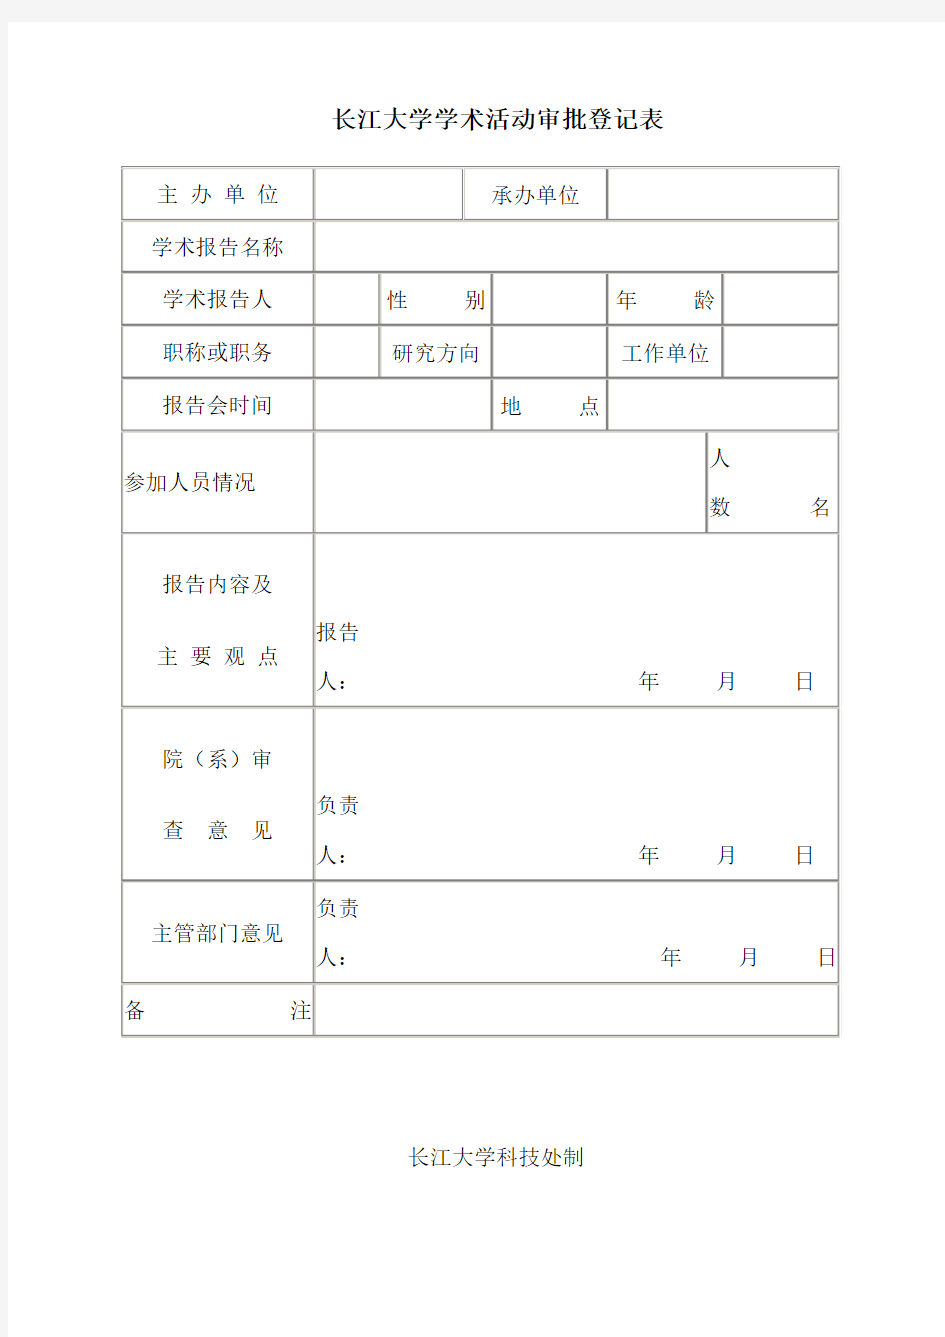 长江大学学术活动审批登记表